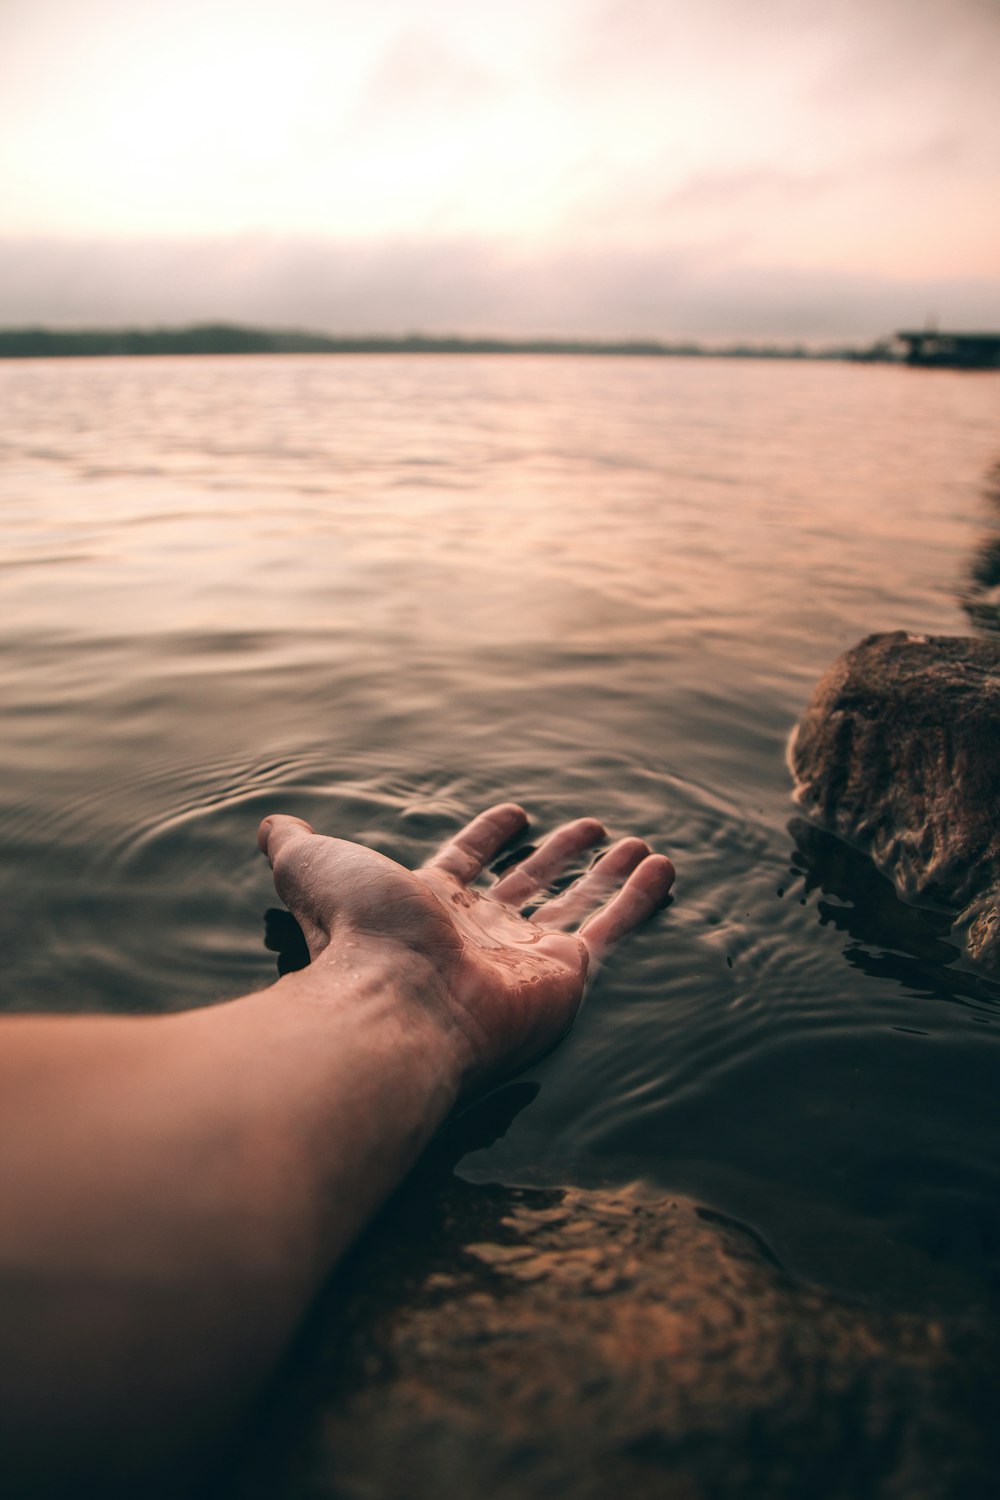 水域に人の手が写っているセレクティブフォーカス撮影